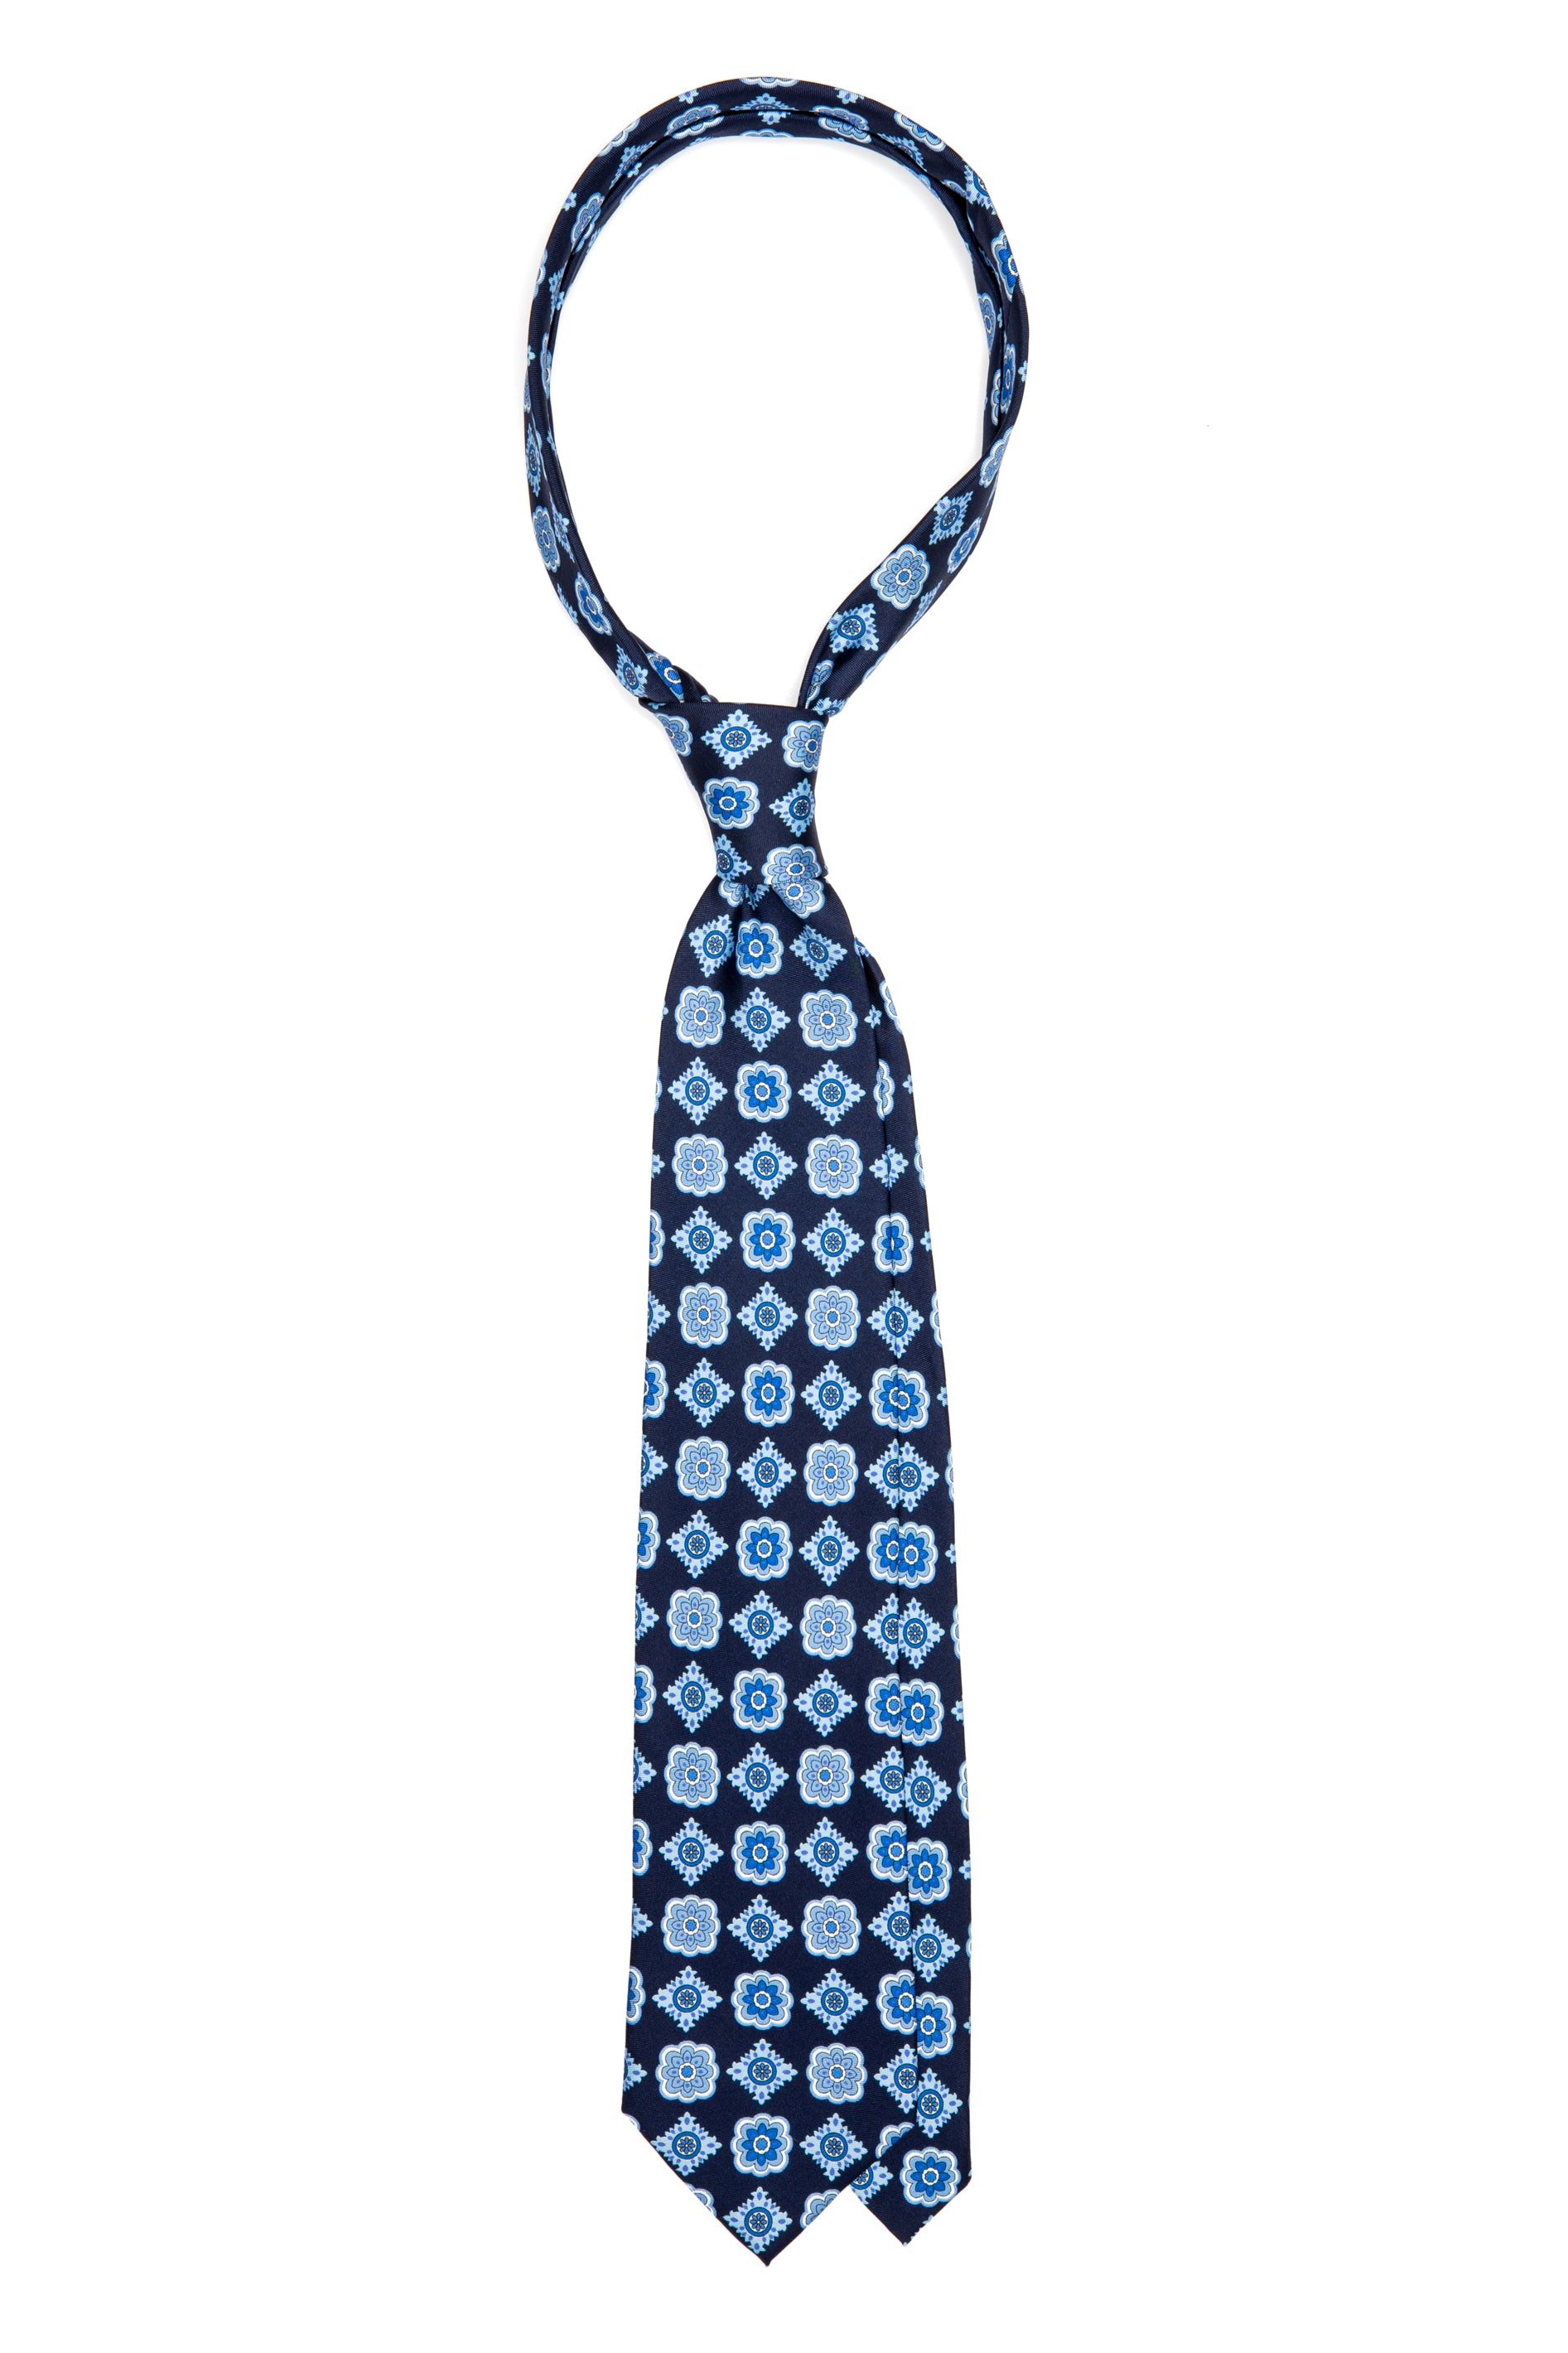 Cravatta in seta blu navy con disegno floreale